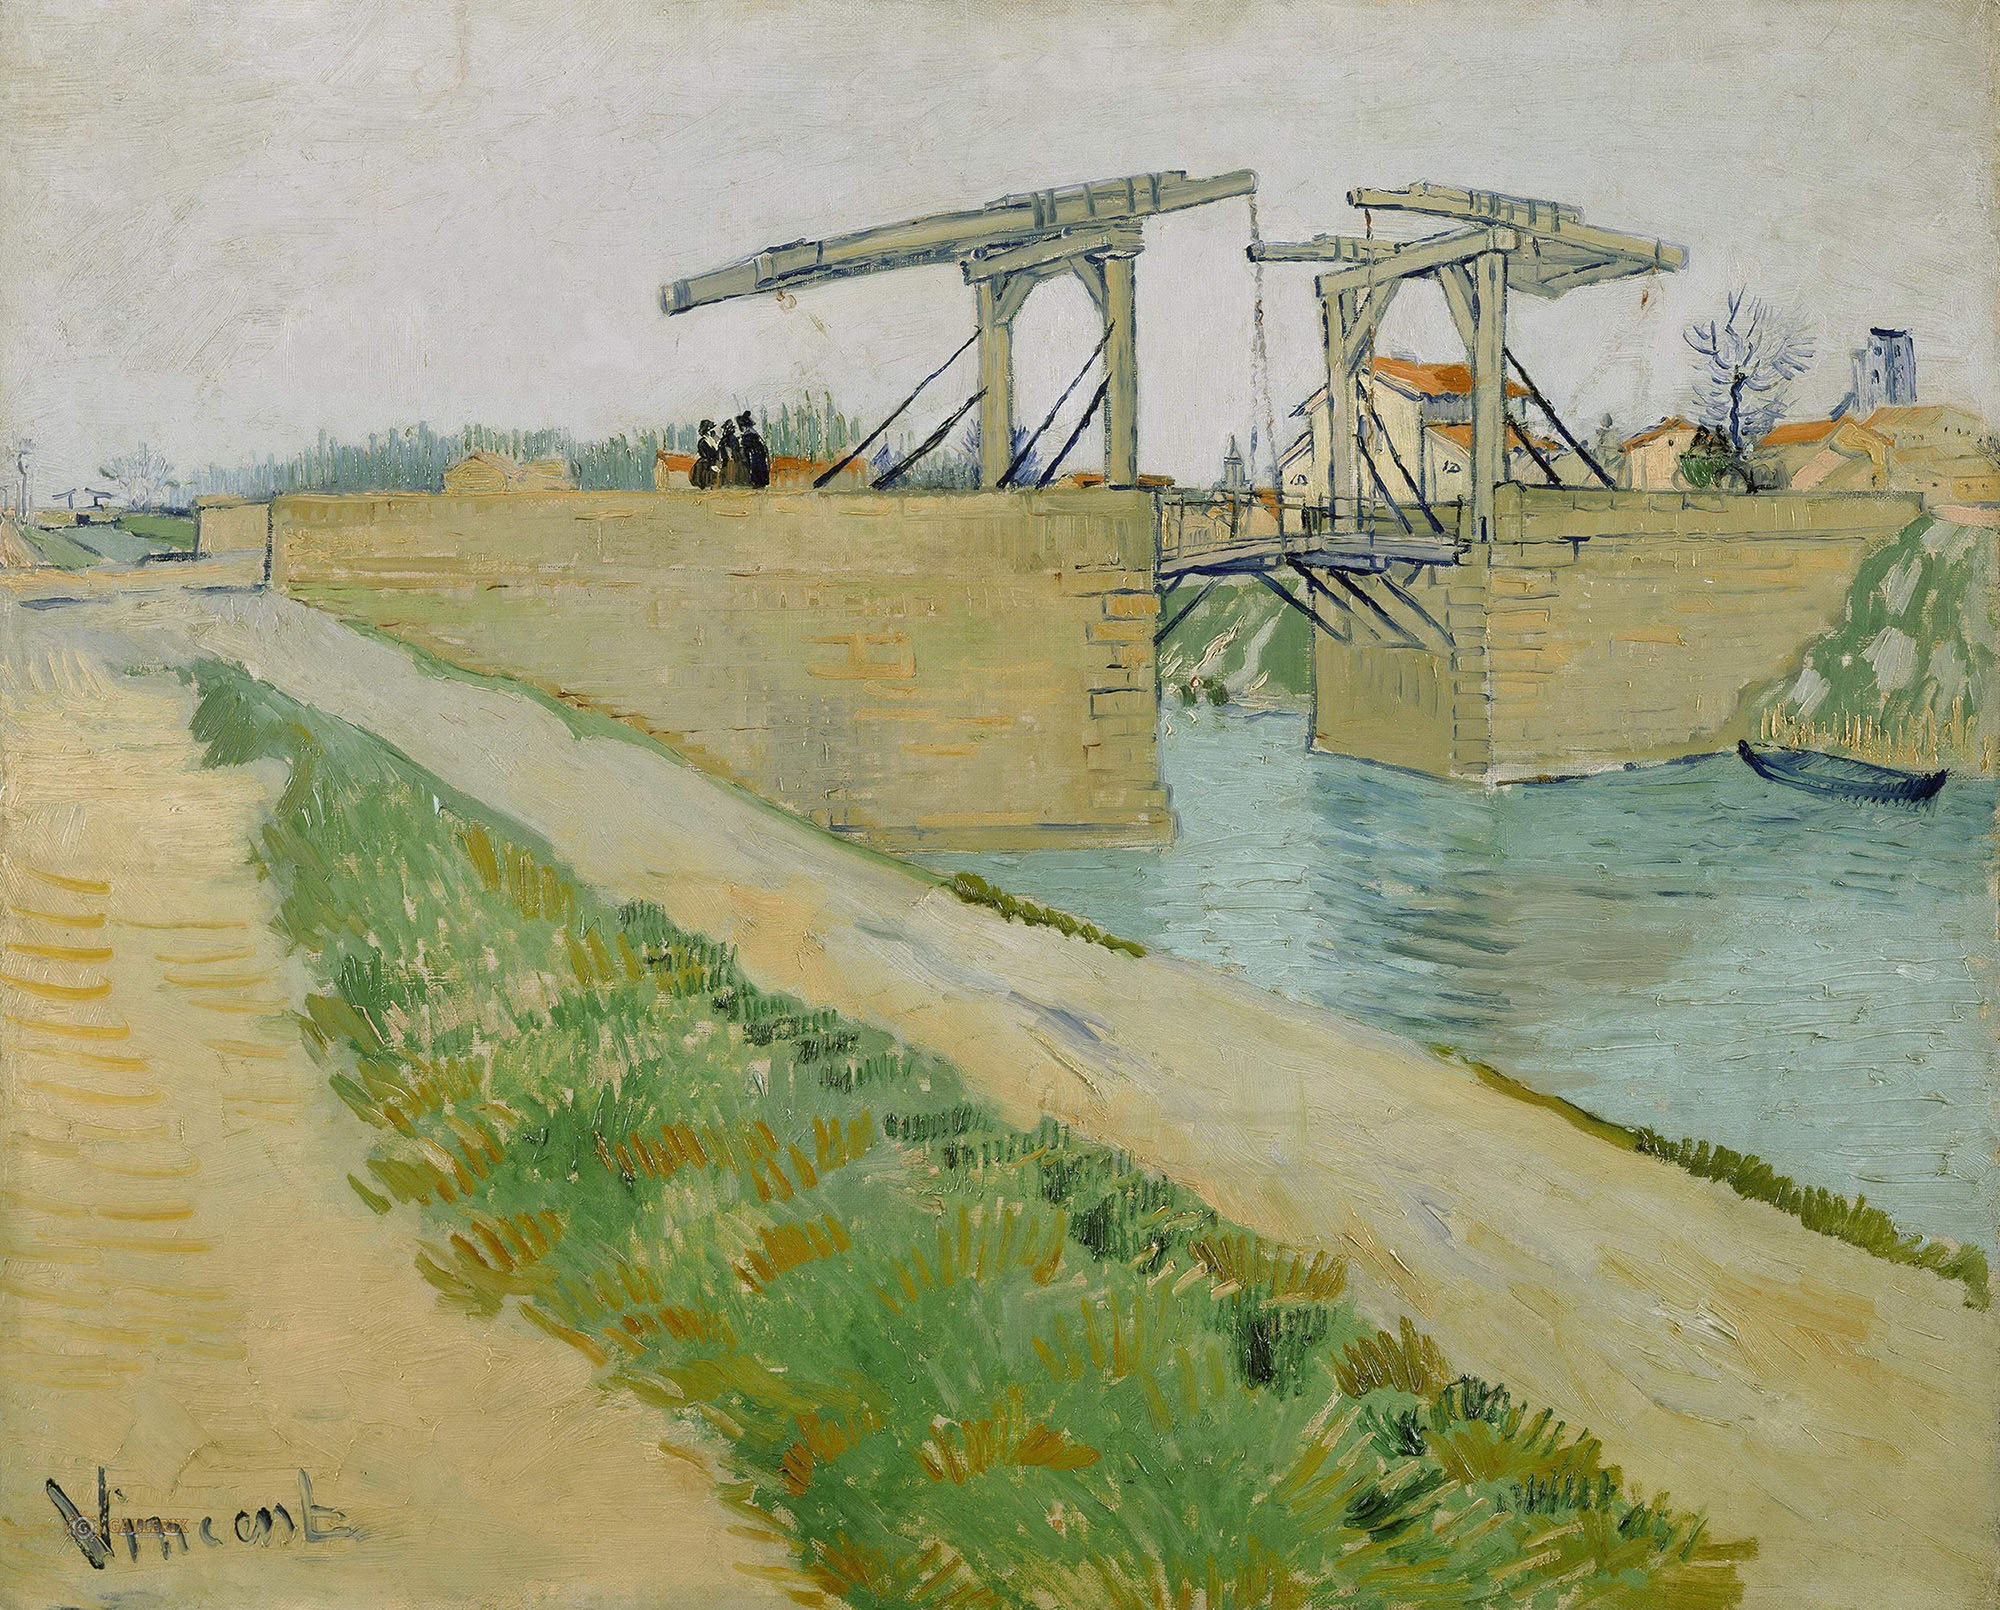 Винсент Ван Гог. "Мост Ланглуа в Арле с дорогой вдоль канала". 1888. Музей Ван Гога, Амстердам.